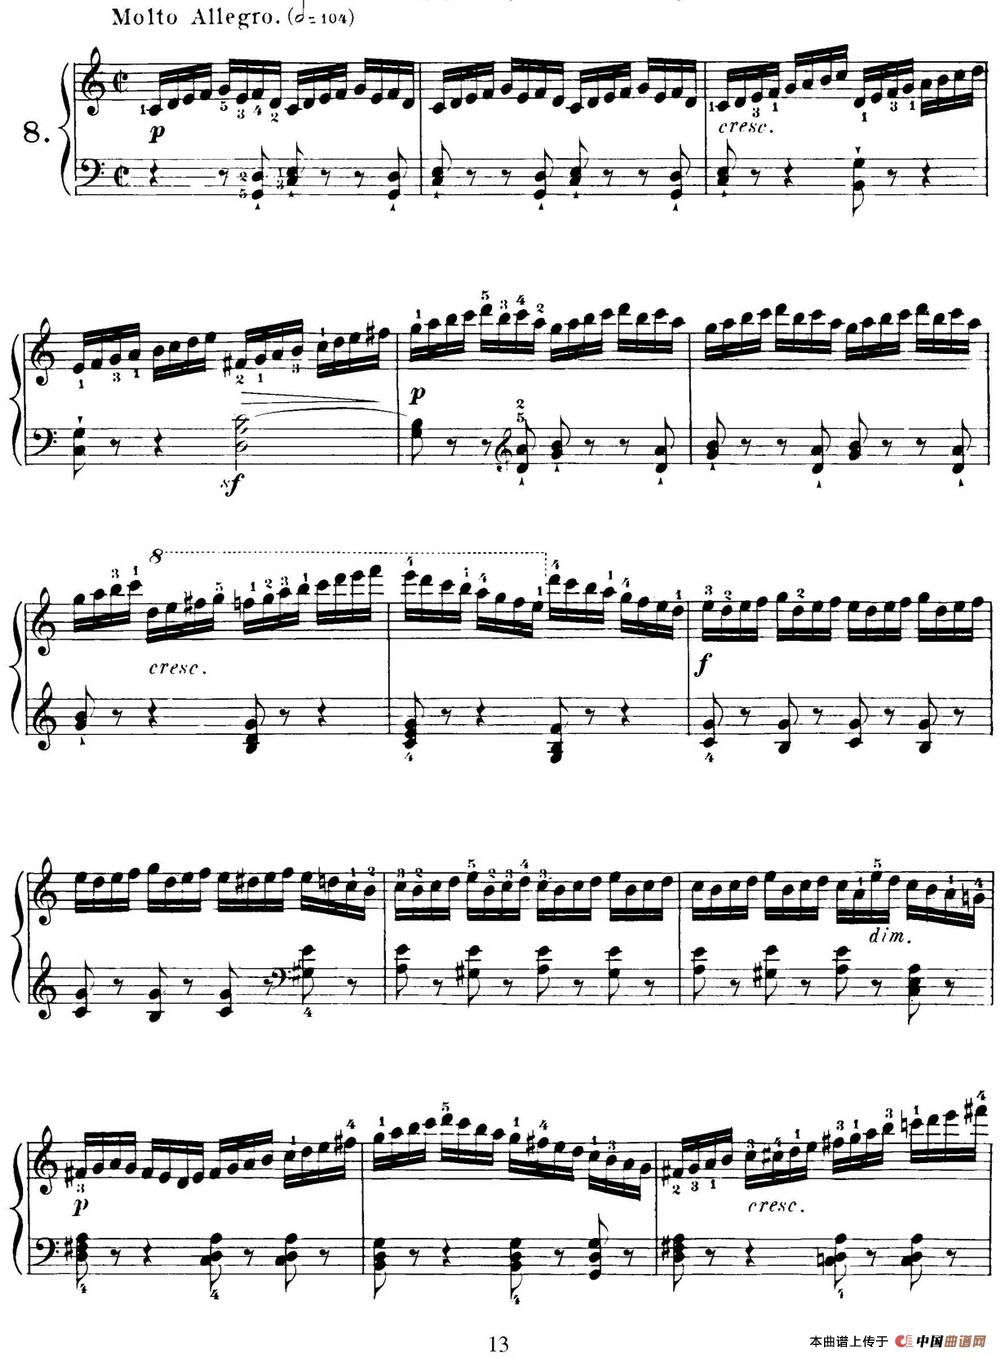 40首车尔尼Op.299钢琴快速练习曲（NO.8）(1)_C299_页面_013.jpg